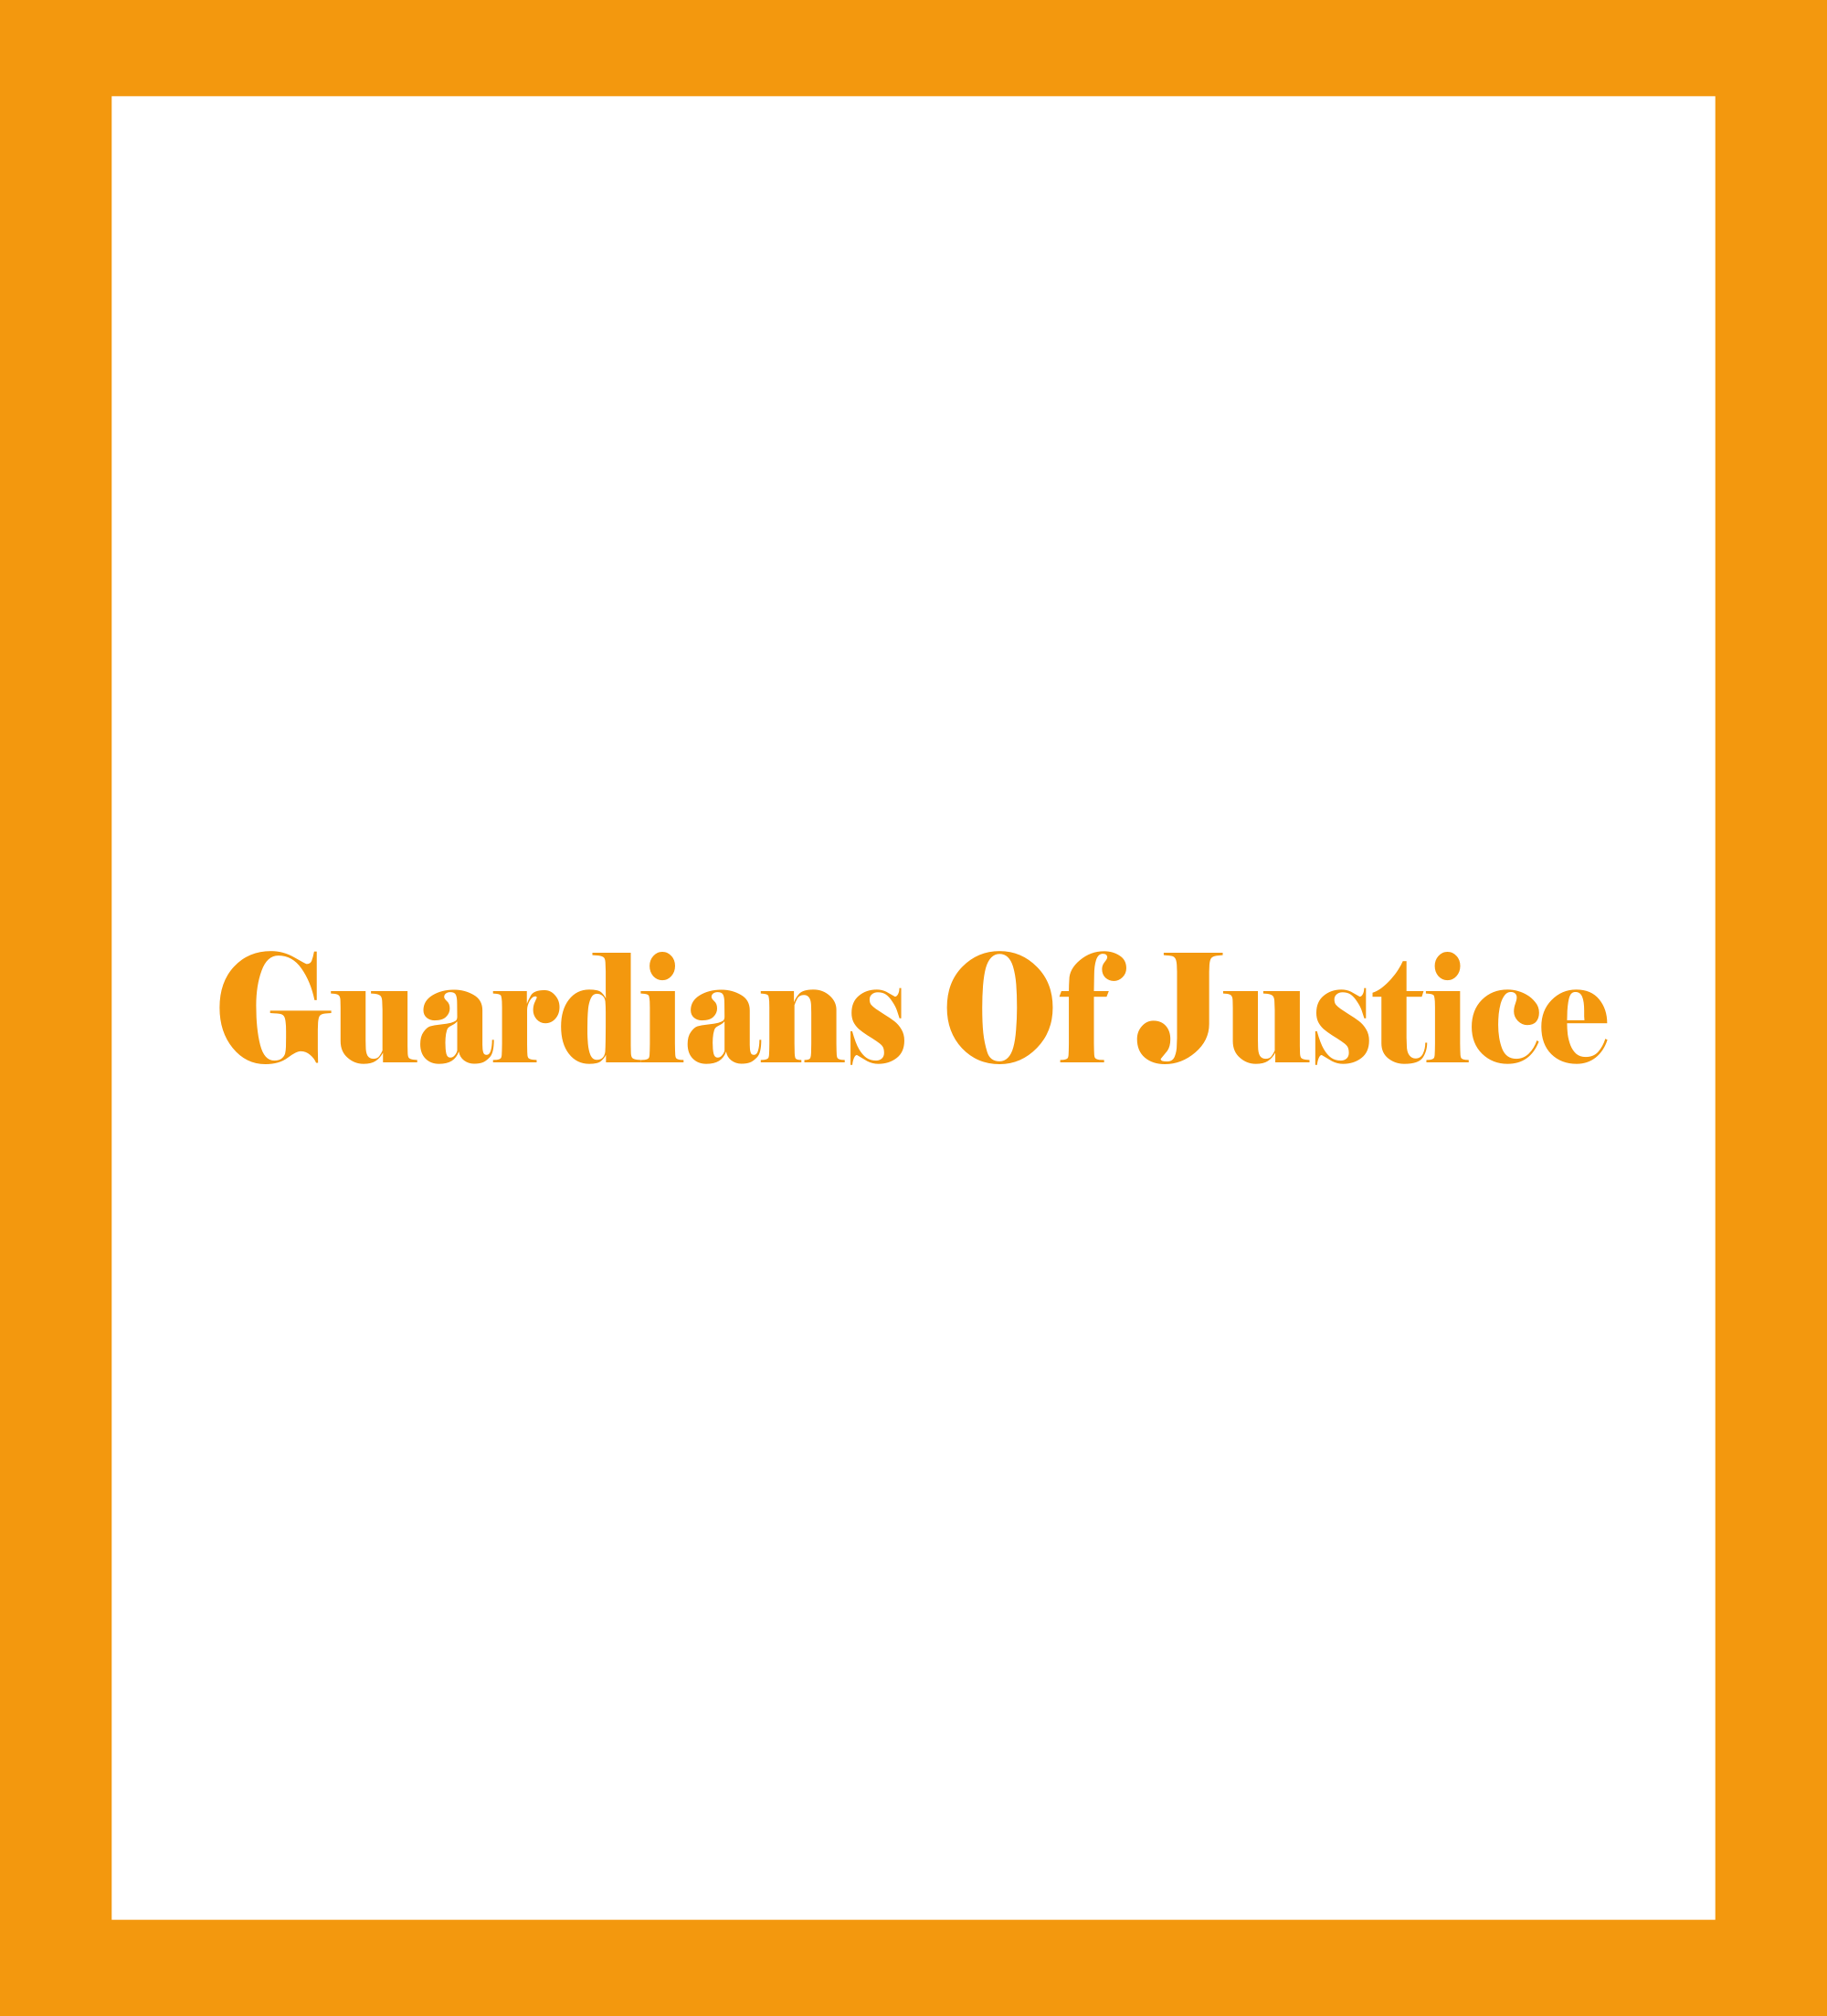 Caratula de Guardians Of Justice (Los guardianes de la justicia) 